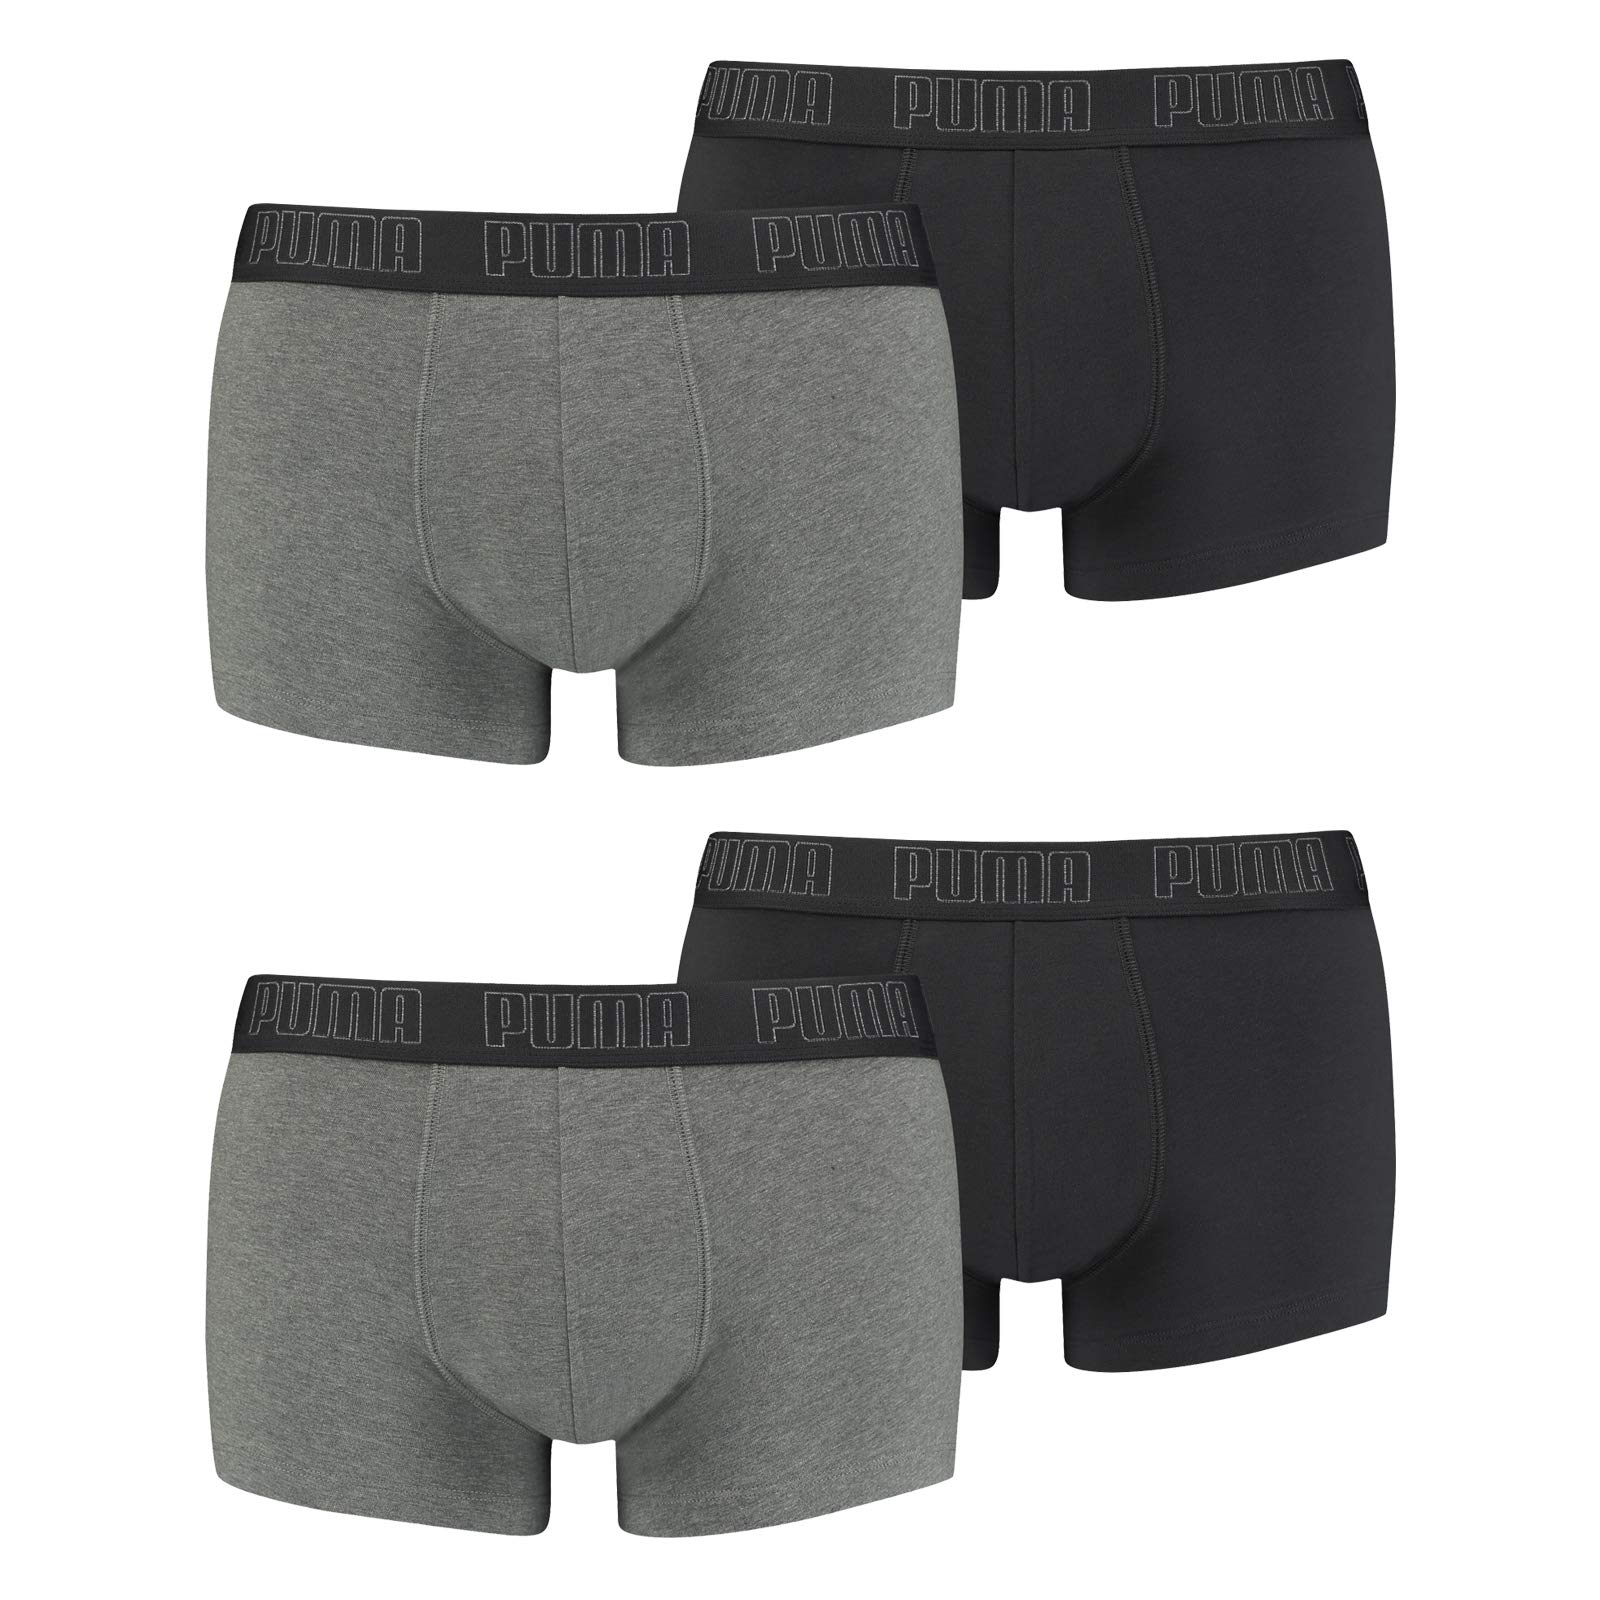 PUMA Herren Shortboxer Unterhosen Trunks 4er Pack, Wäschegröße:XL, Artikel:-008 Dark Grey Melange/Black